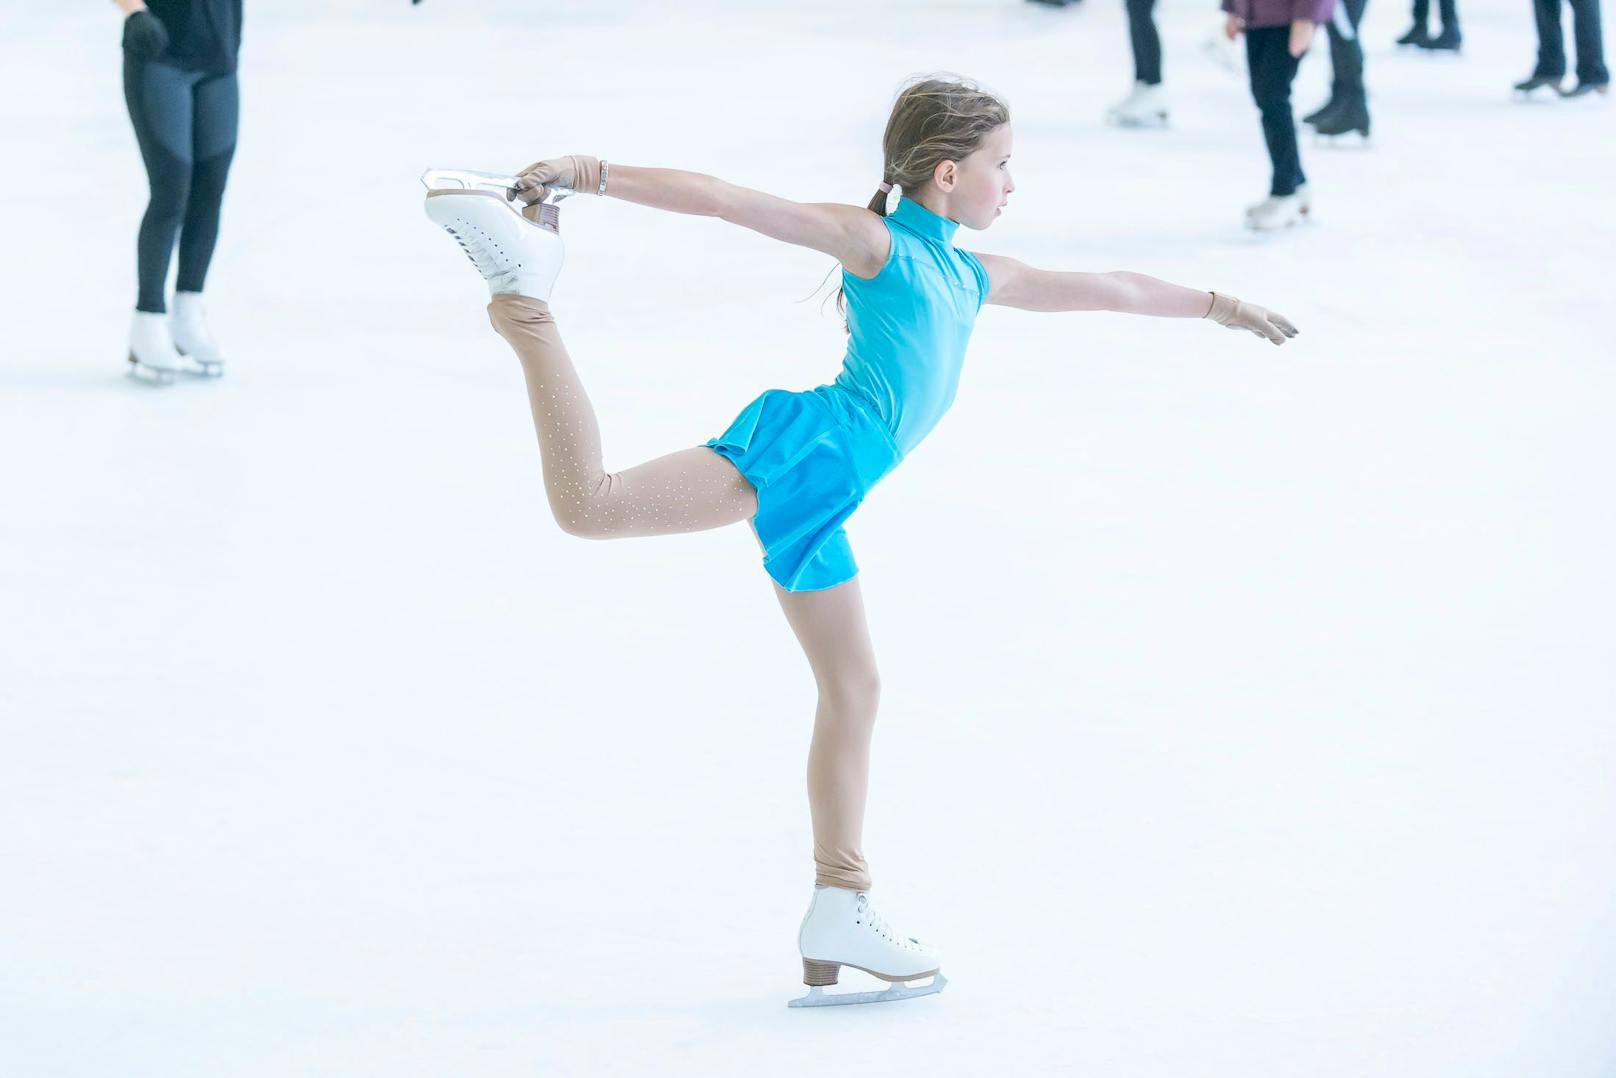 Während der Sommersaison ist die Halle für Publikums-Eislaufen jeden Dienstag von 16 bis 19.45 Uhr geöffnet.